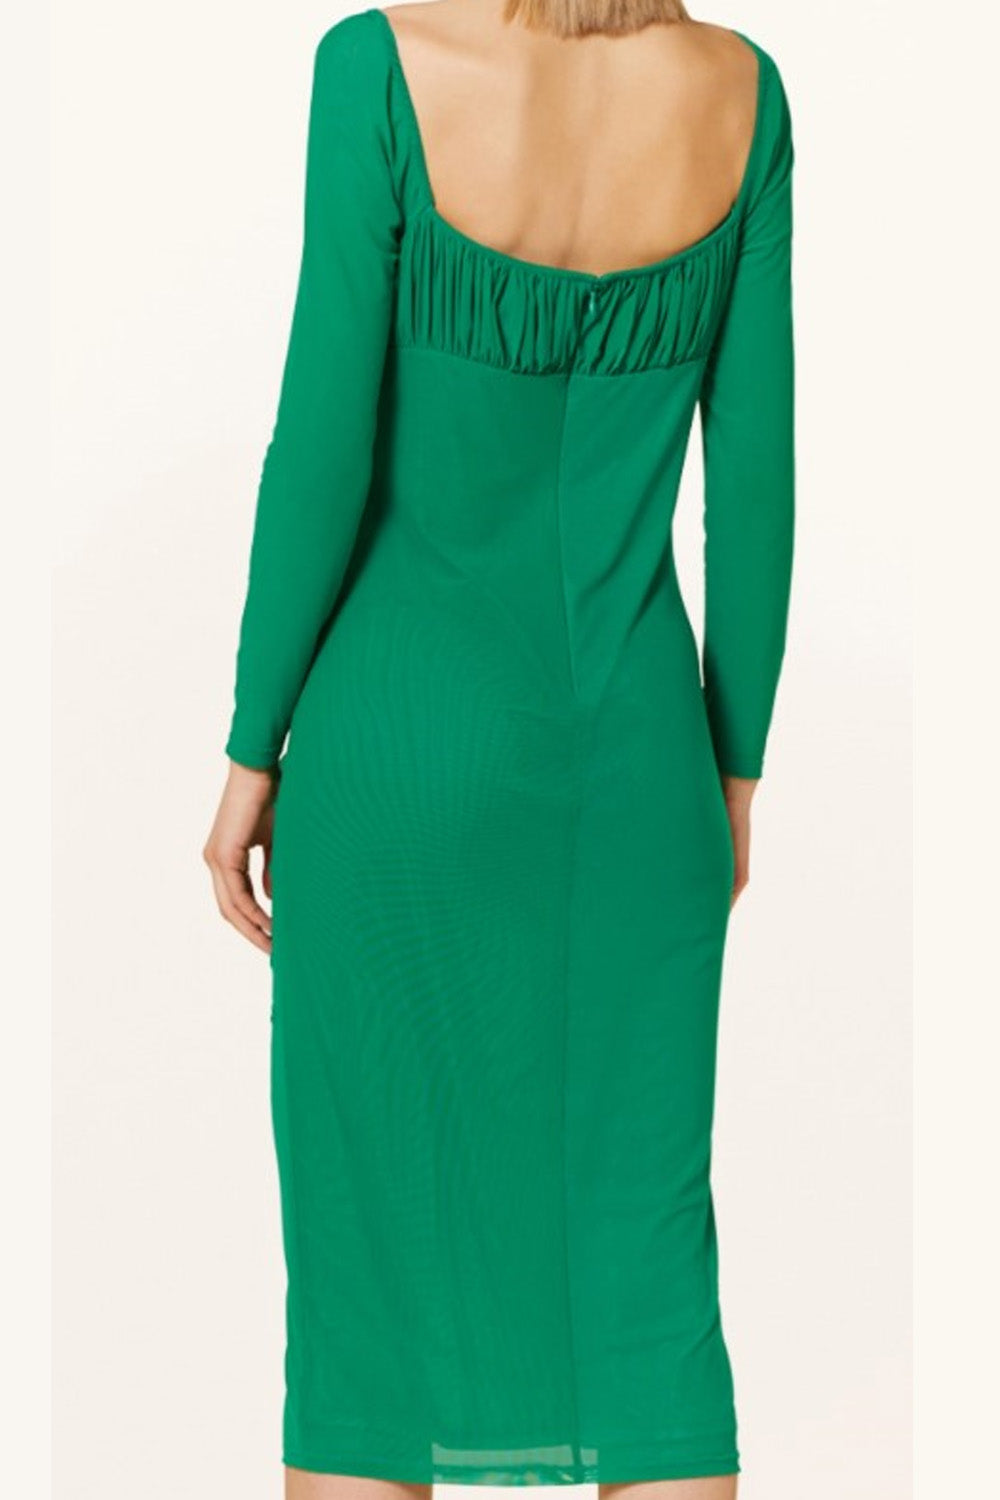 Terra Green Dress